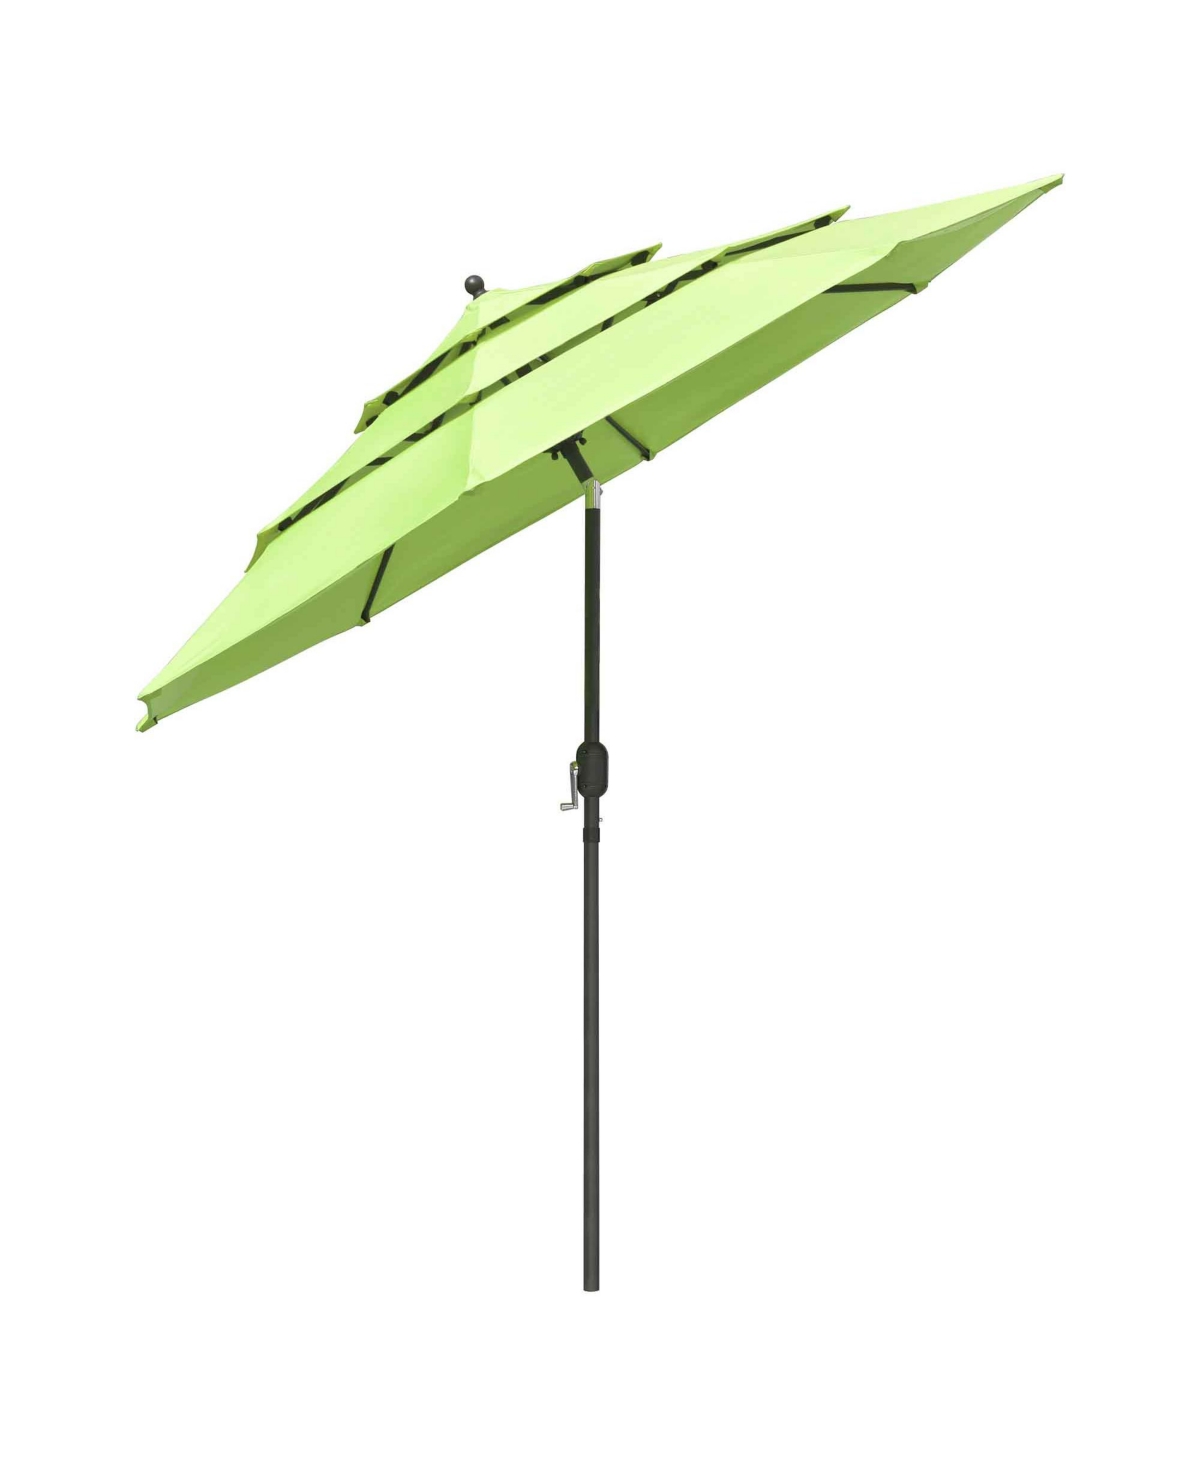 10 Ft 3 Tier Patio Umbrella with Crank Handle Push to Tilt Yard Outdoor - Green